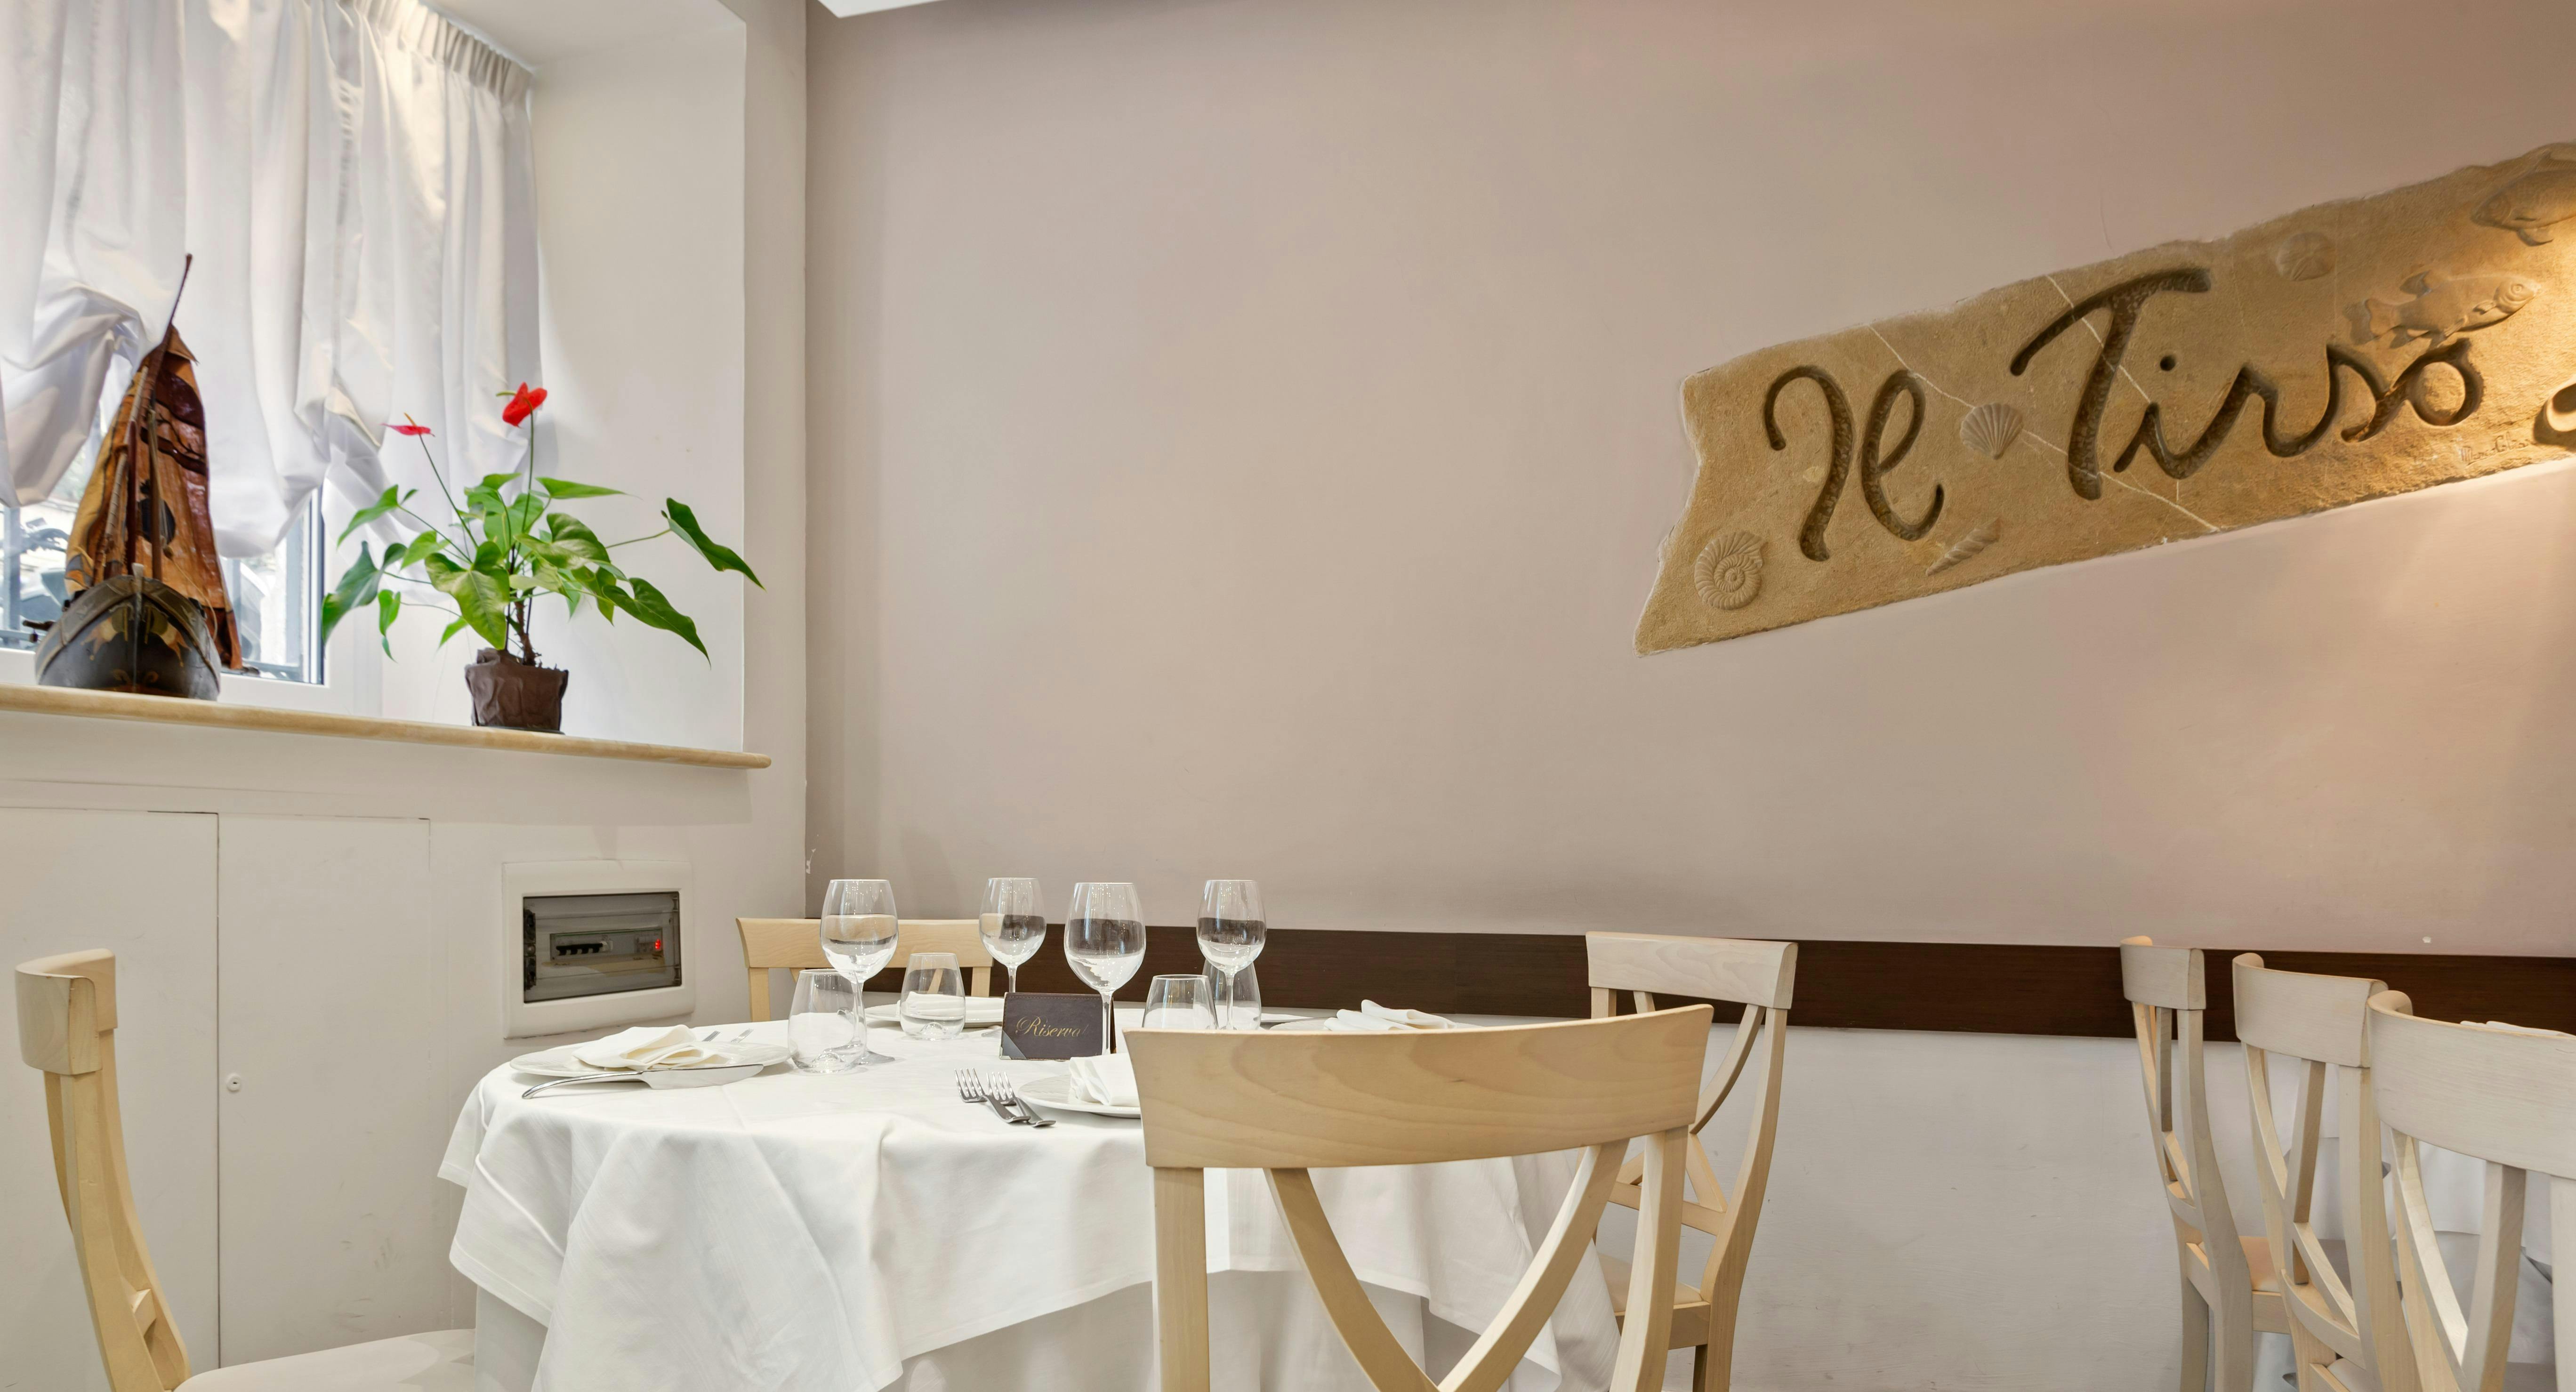 Photo of restaurant Il Tirso in Salario, Rome